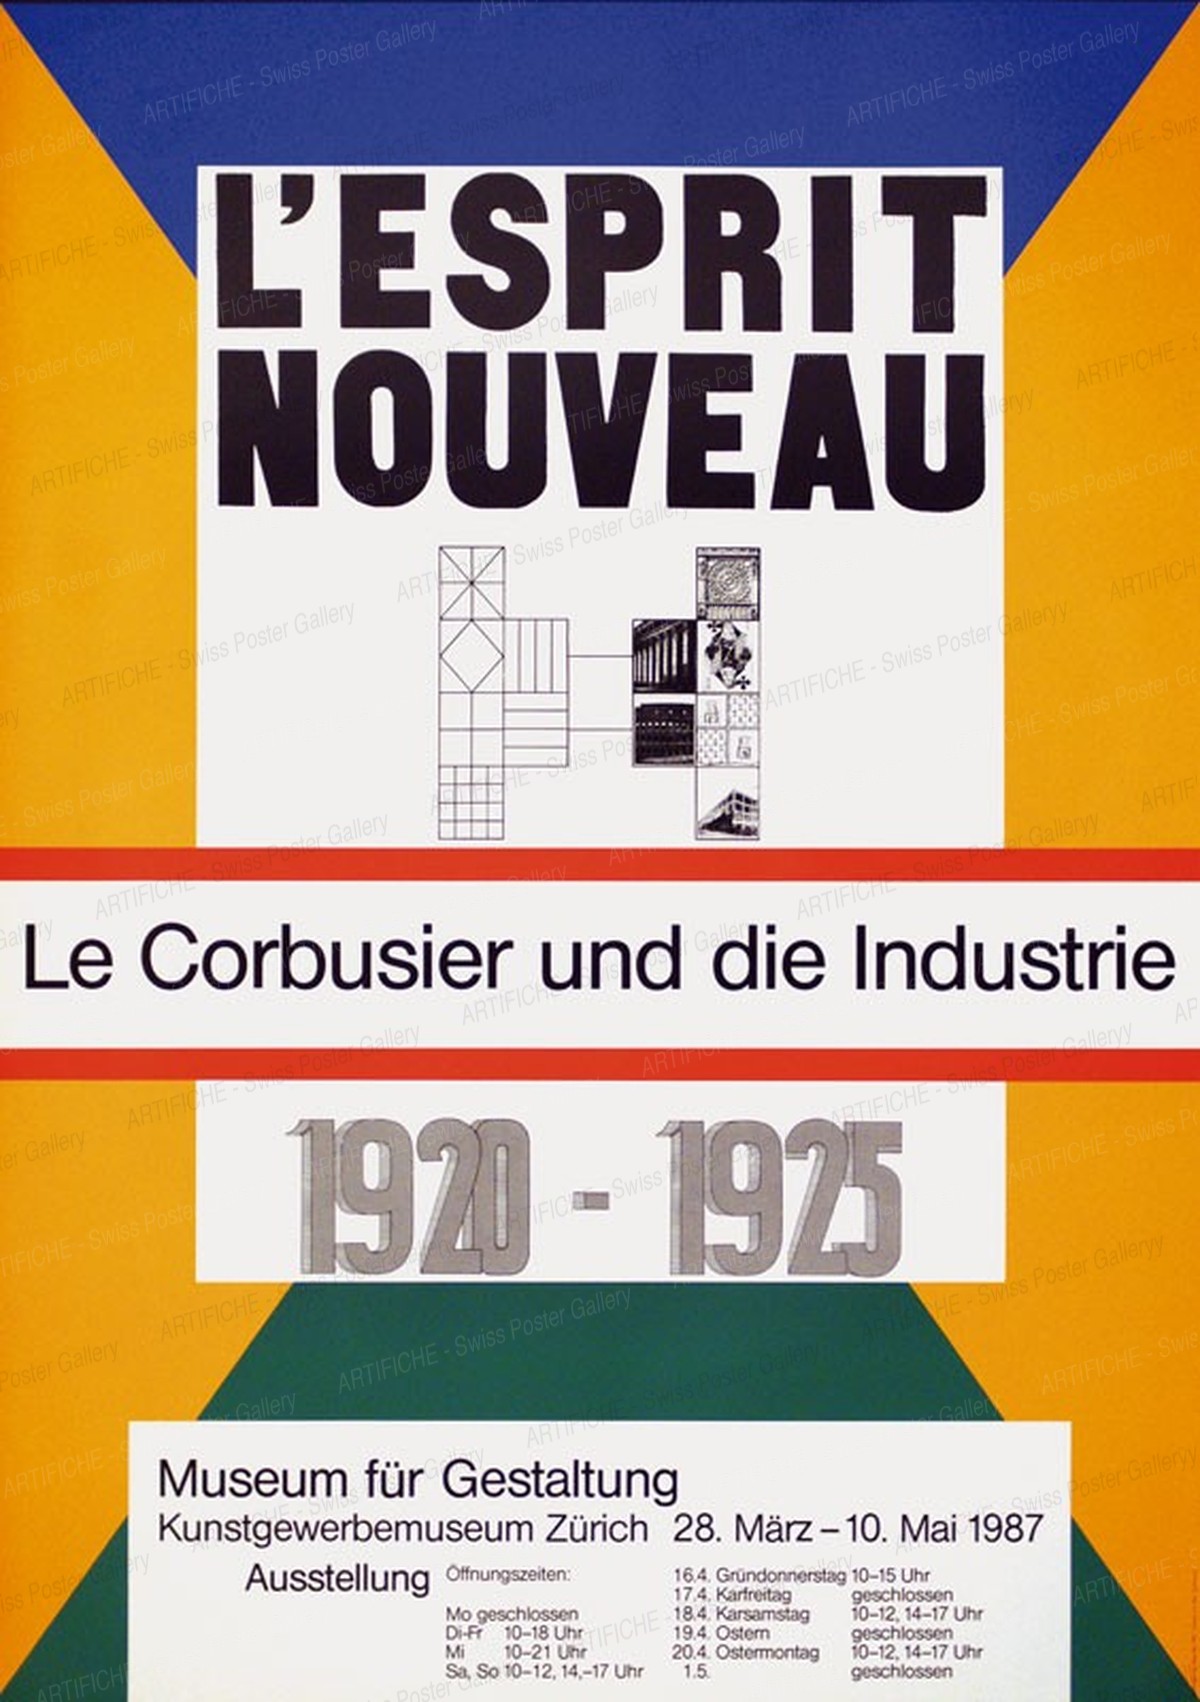 Museum für Gestaltung Zürich – l‘esprit nouveau: Le Corbusier und die Industrie 1920 – 1925, Max Bill